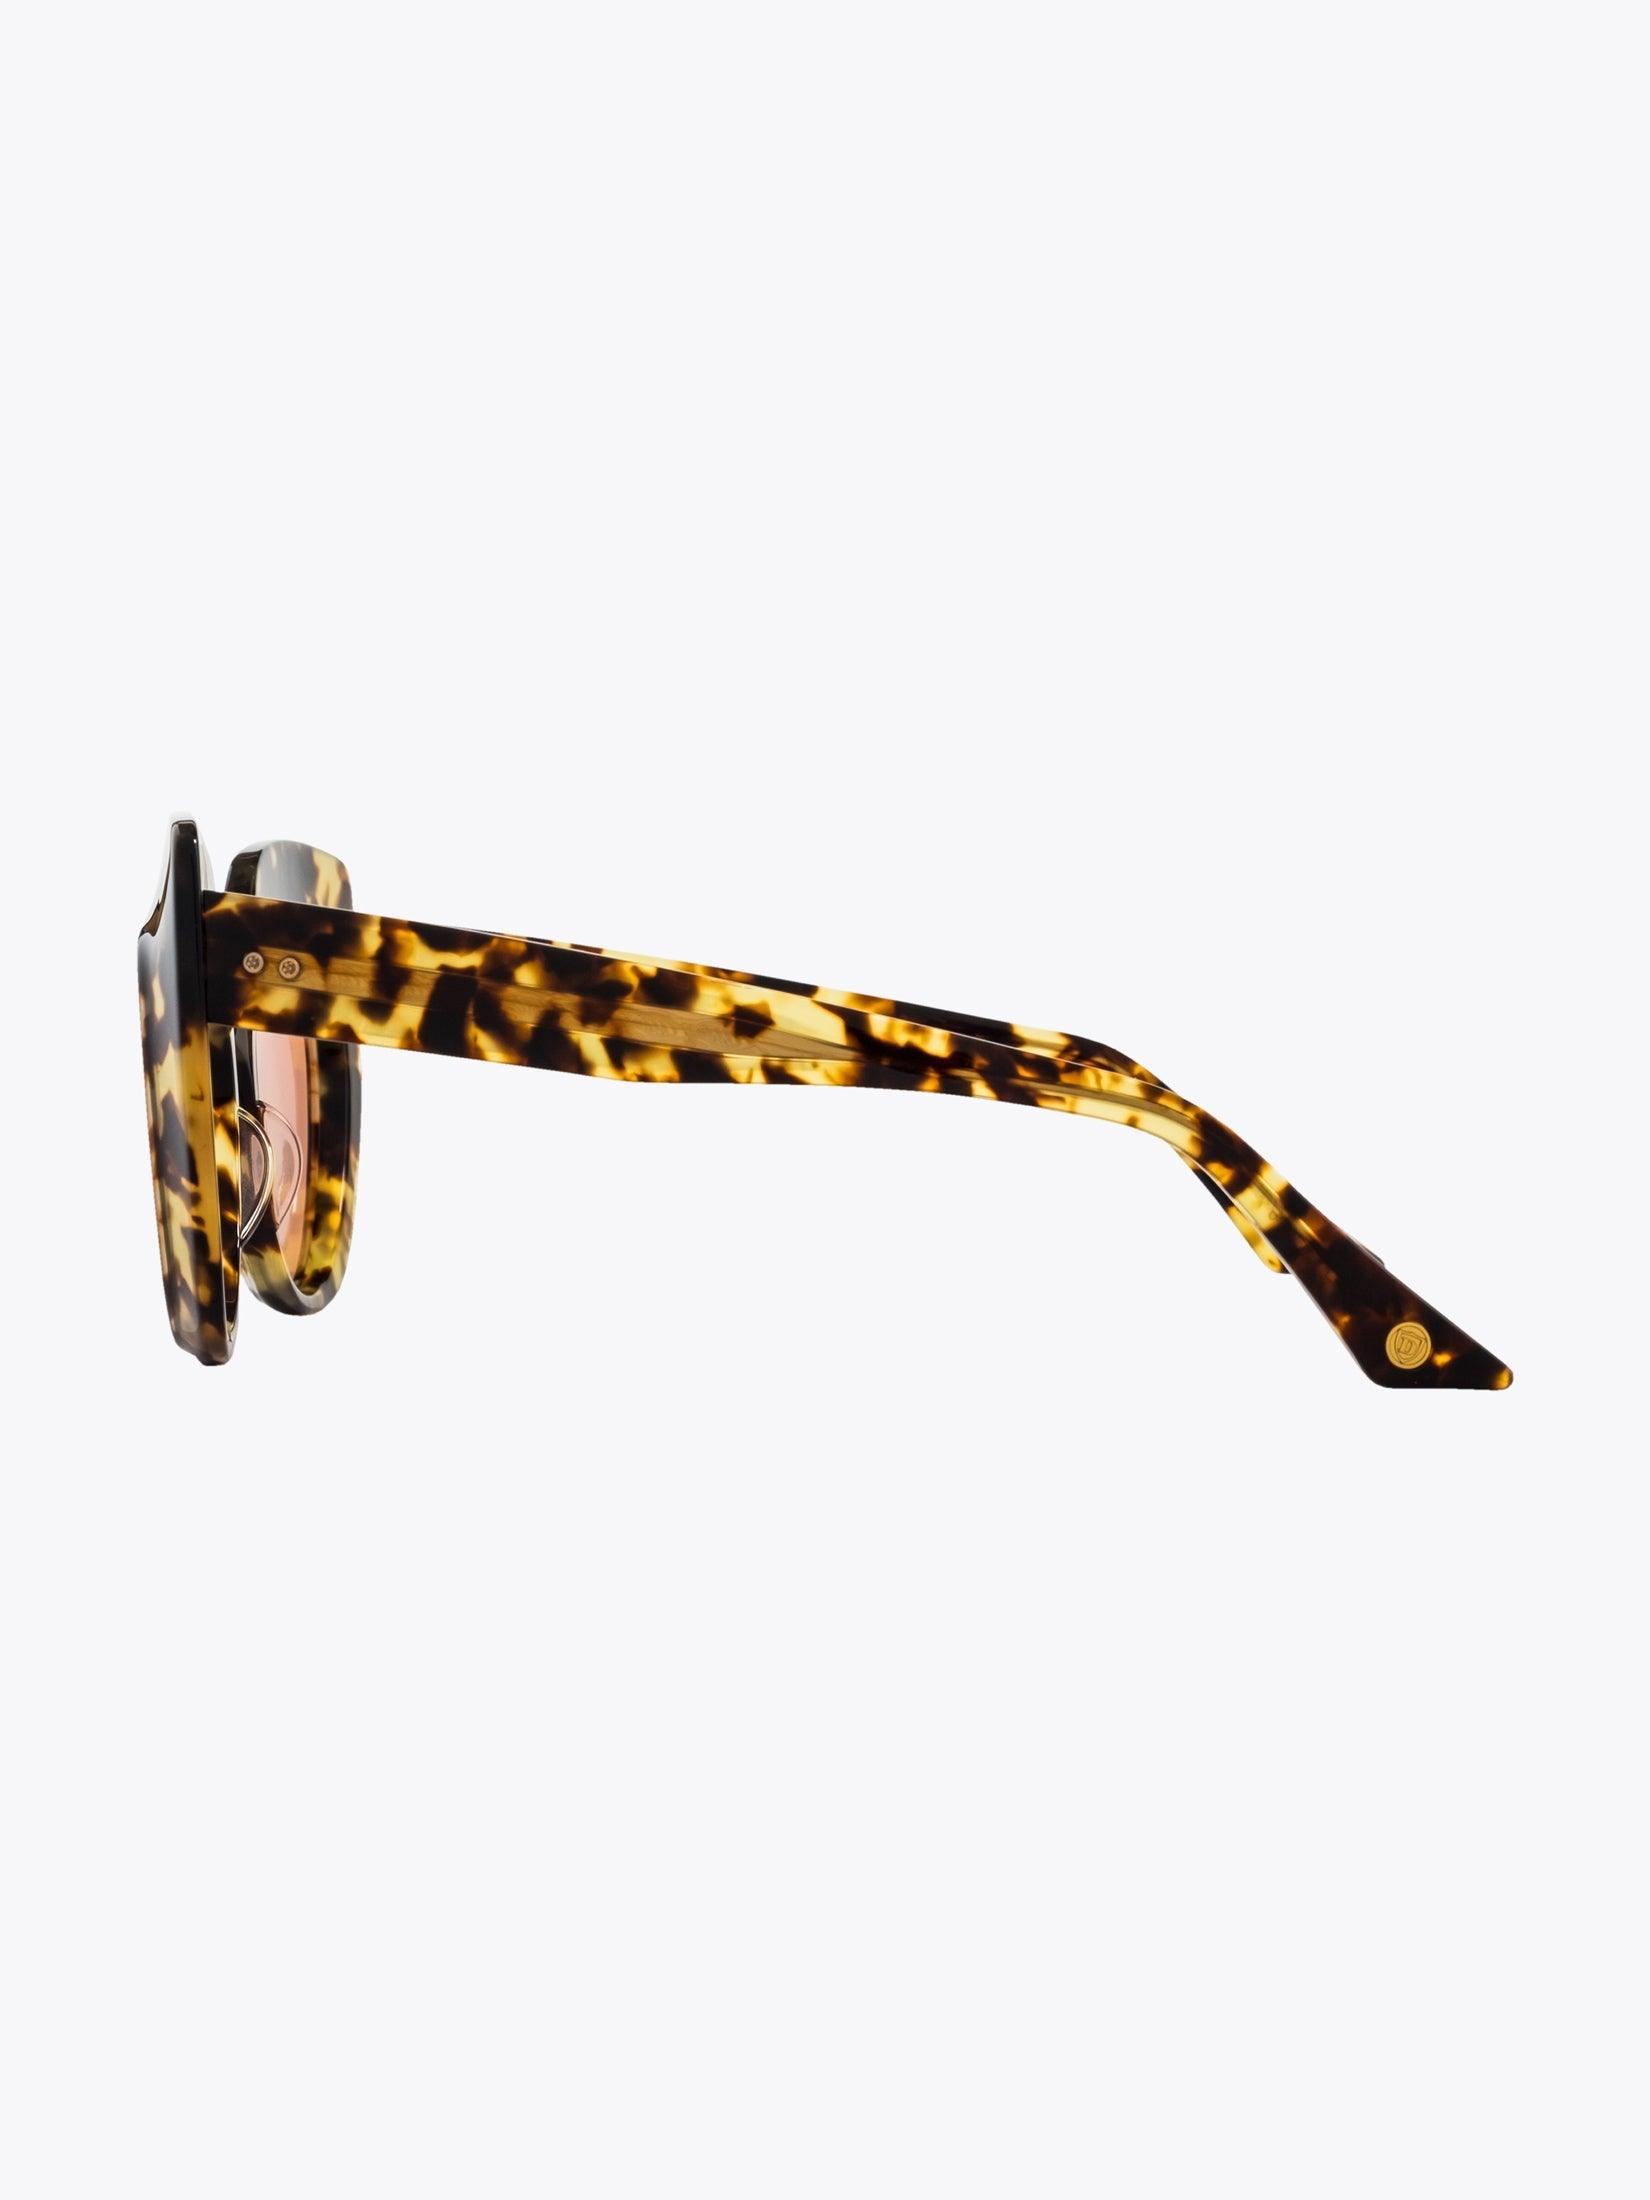 DITA Conique Tortoise Sunglasses